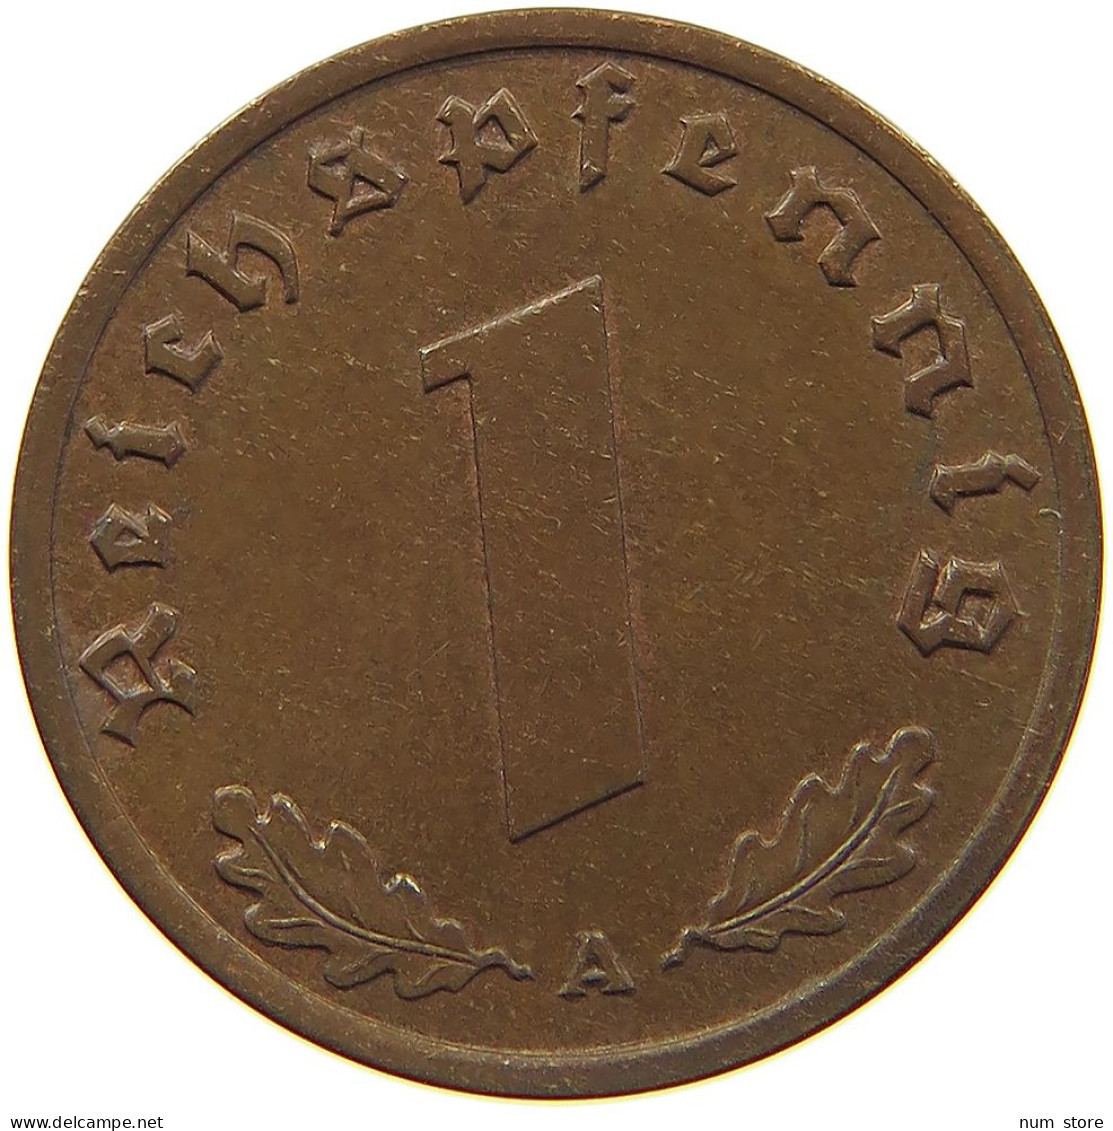 GERMANY 1 REICHSPFENNIG 1939 A #s096 0119 - 1 Reichspfennig